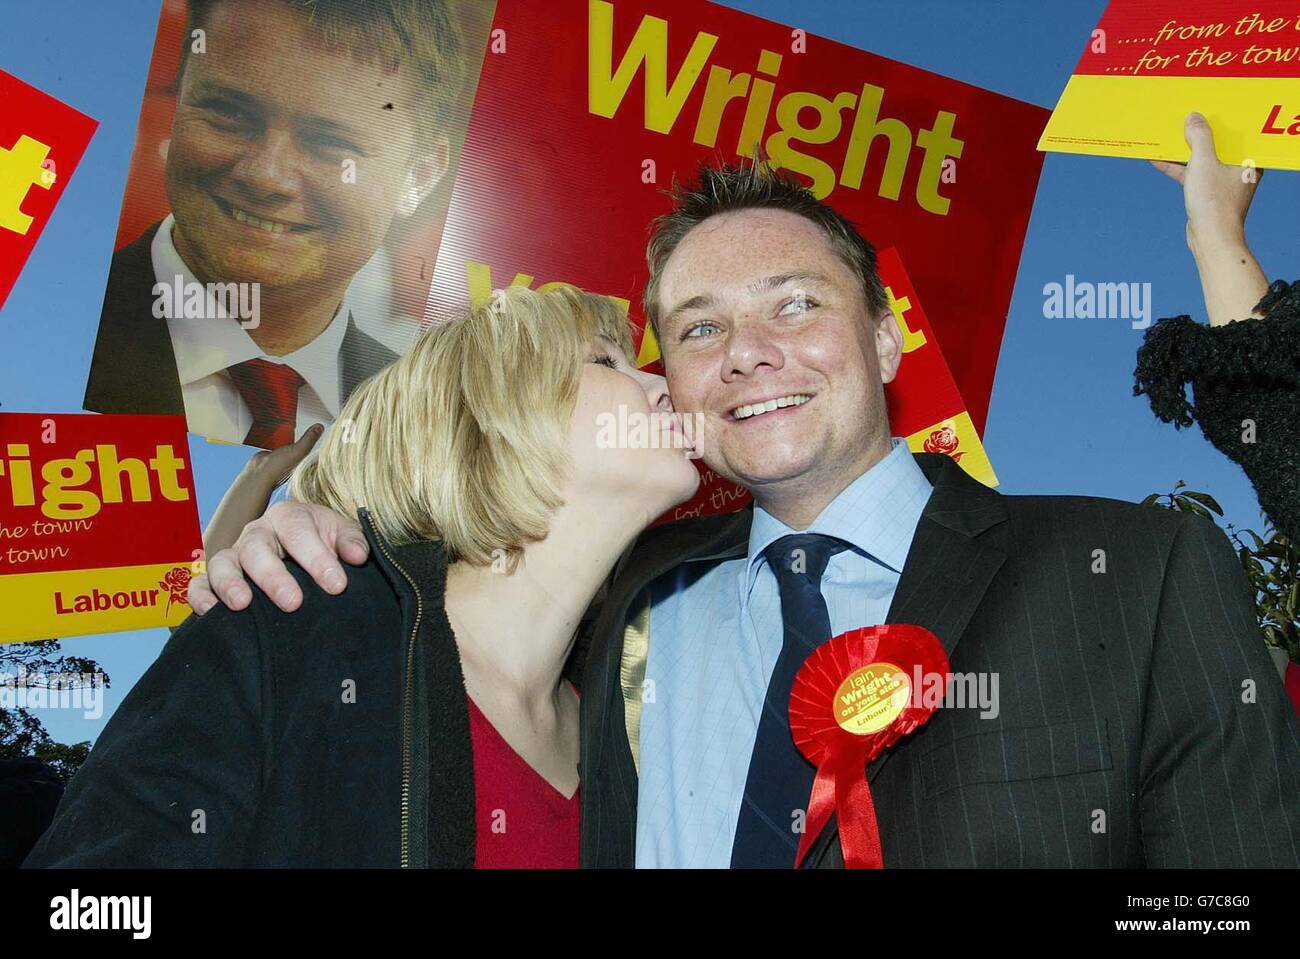 Der neu gewählte Abgeordnete der Hartlepool-Labour-Partei Iain Wright mit seiner hochträchtigen Frau Tiffiny feiert seinen Sieg bei den gestrigen Nachwahlen mit einer offenen Busrundfahrt durch die Stadt. Stockfoto